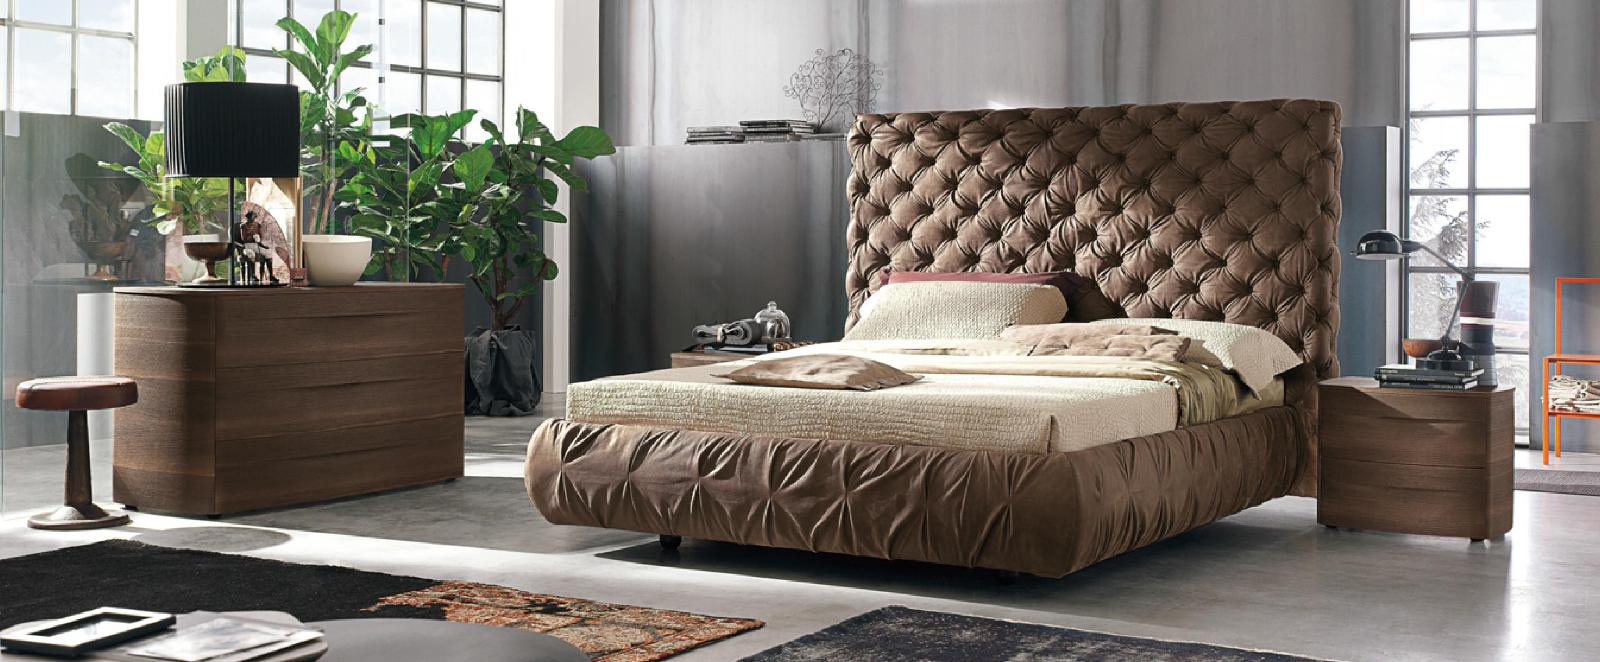 Двуспальные кровати с обивкой: Chantal alto